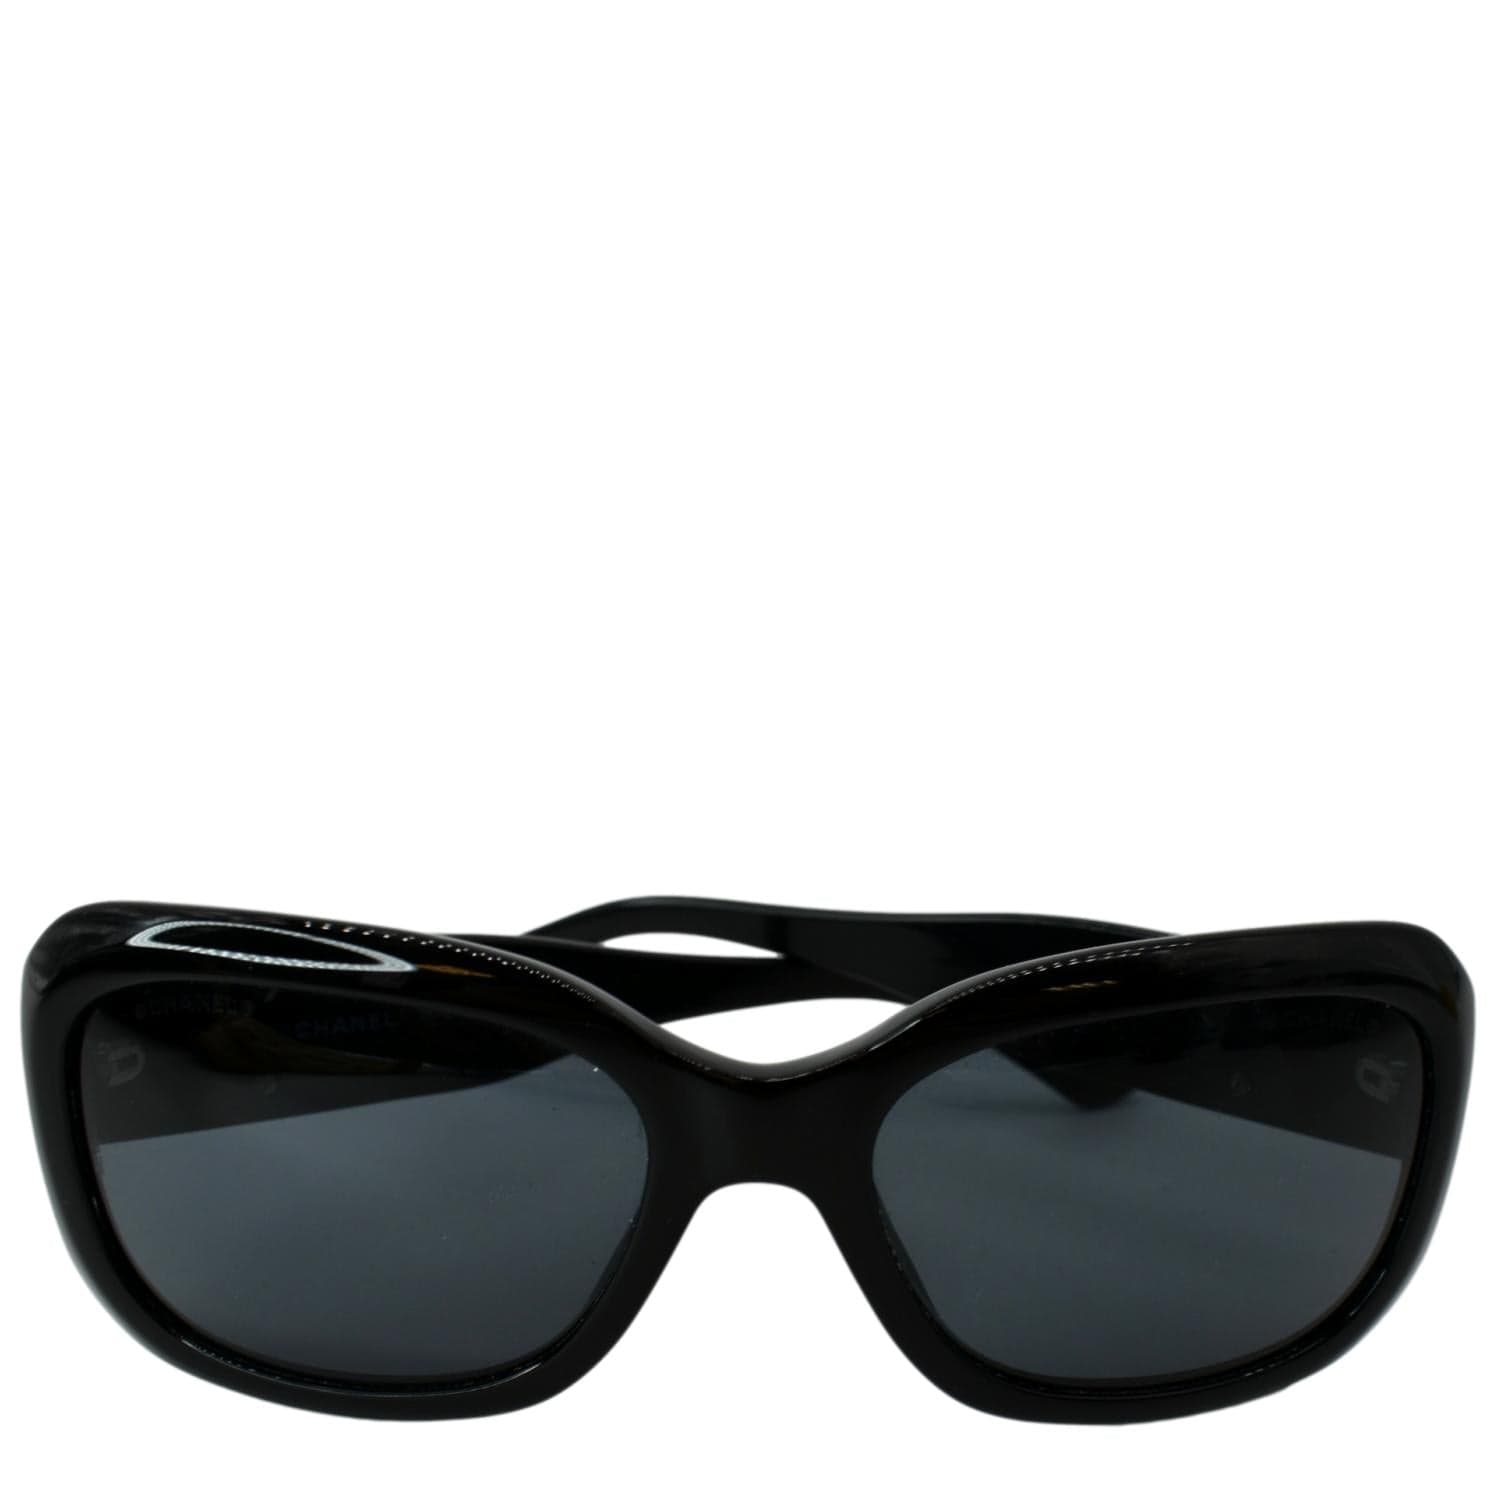 Chanel Brown Gradient Lenses Tortoise Shell Frame Sunglasses 5072